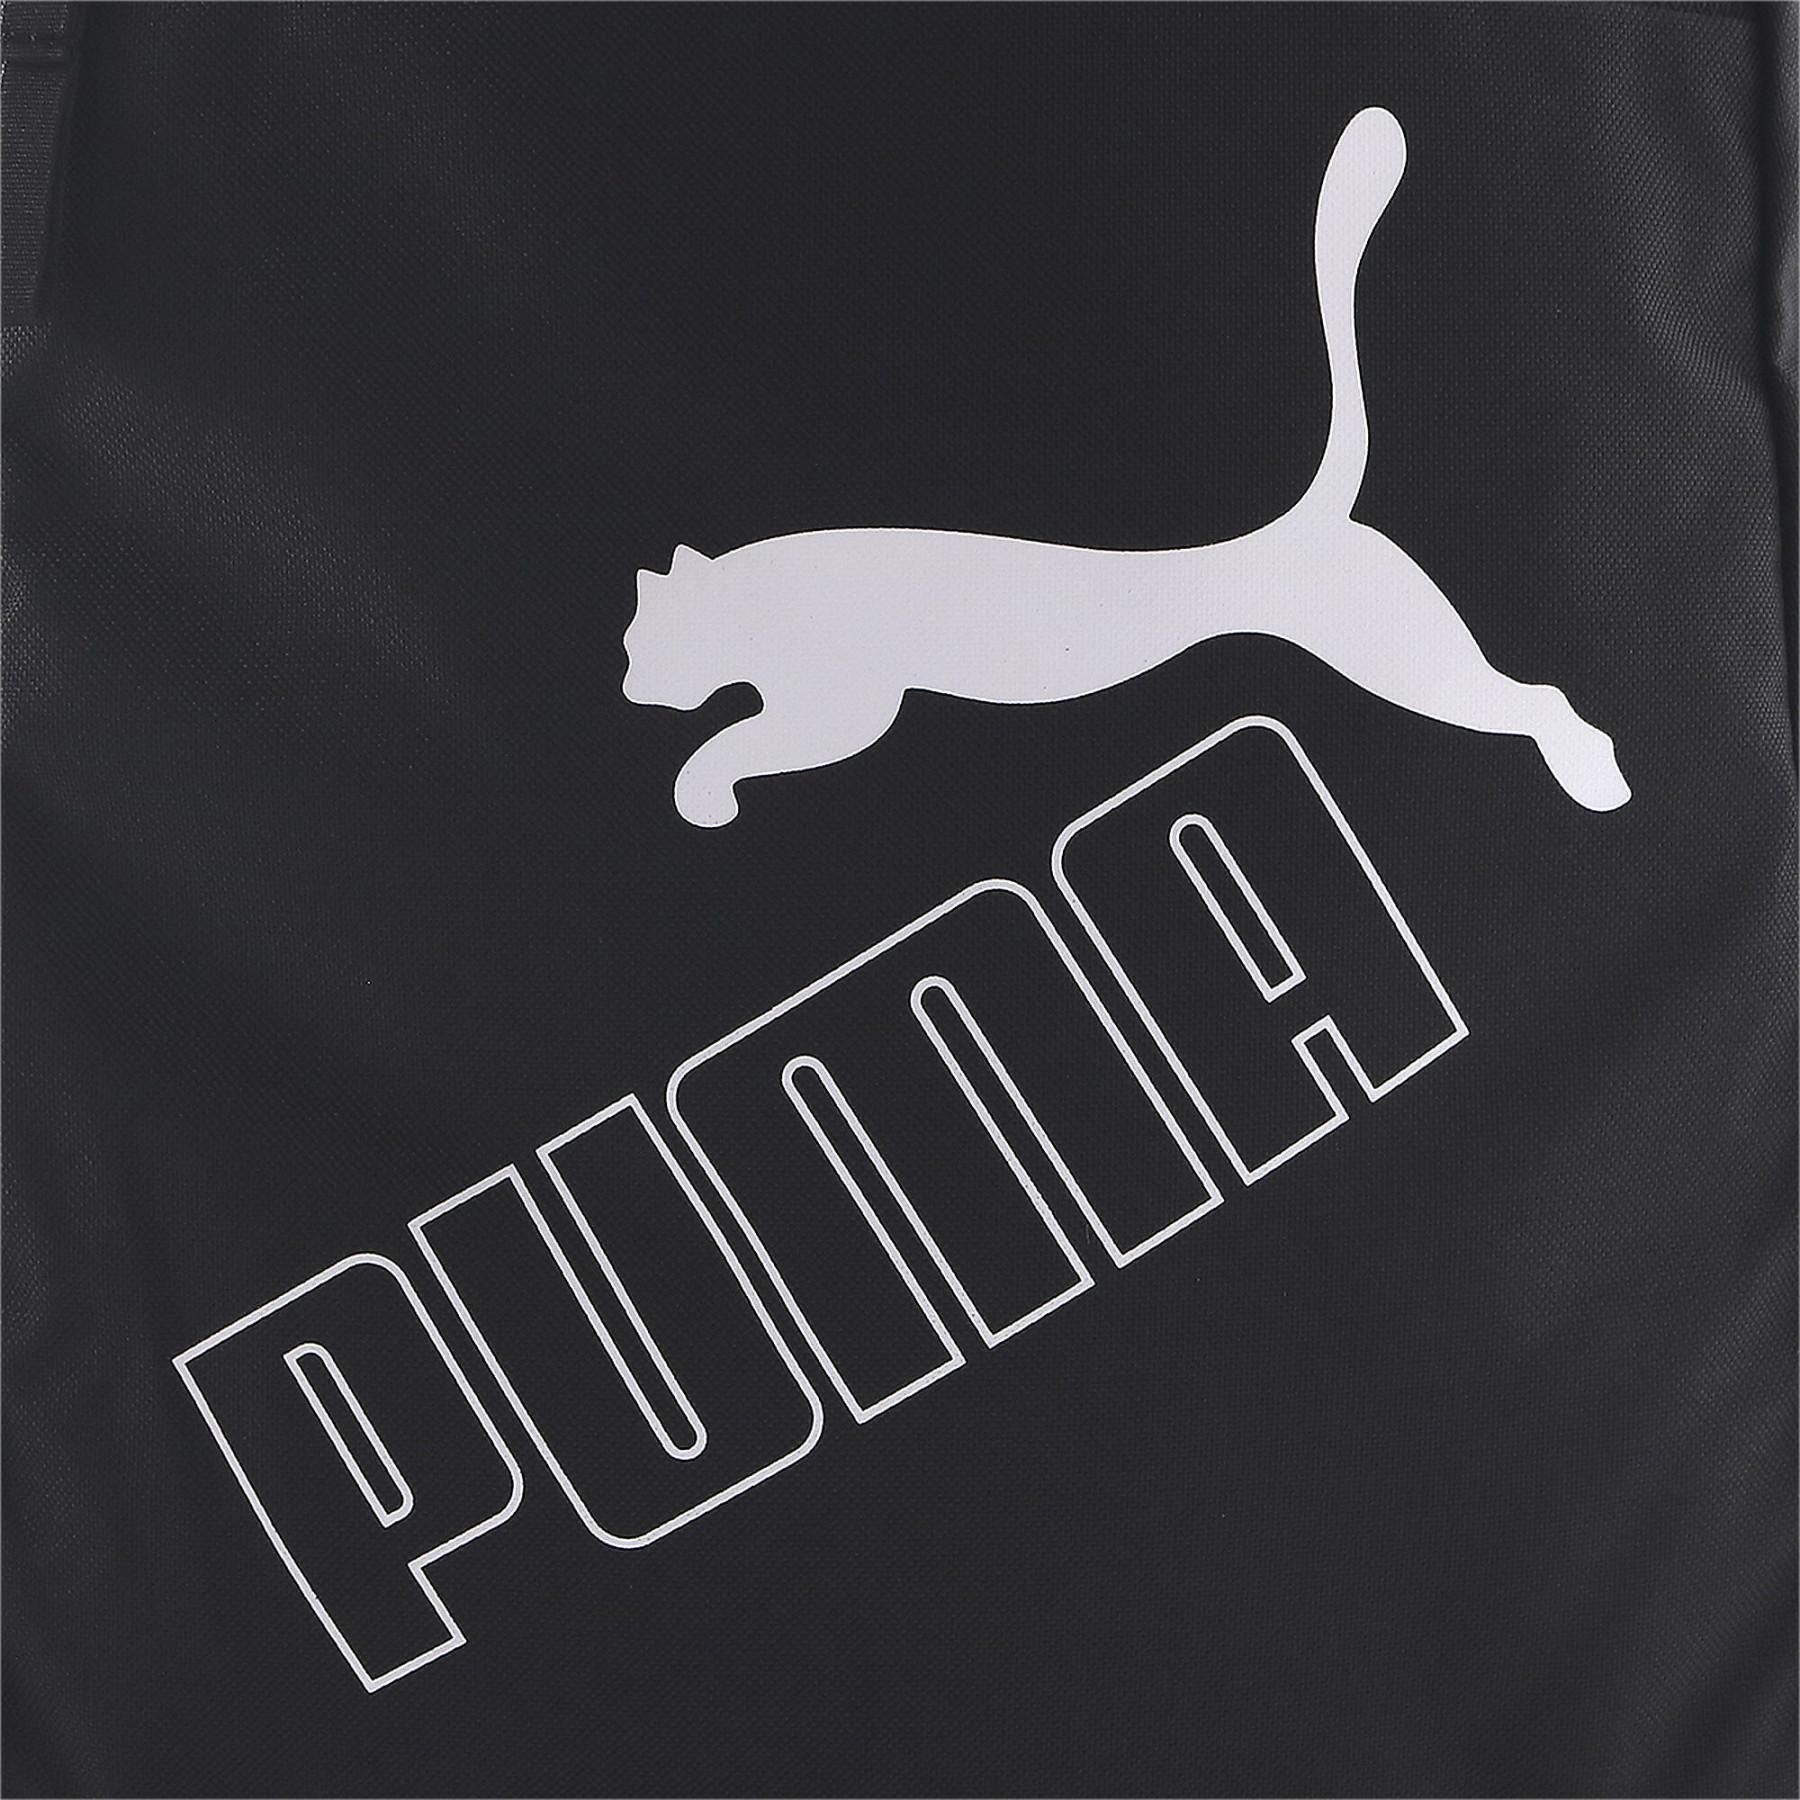 Backpack Puma PUMA Phase II